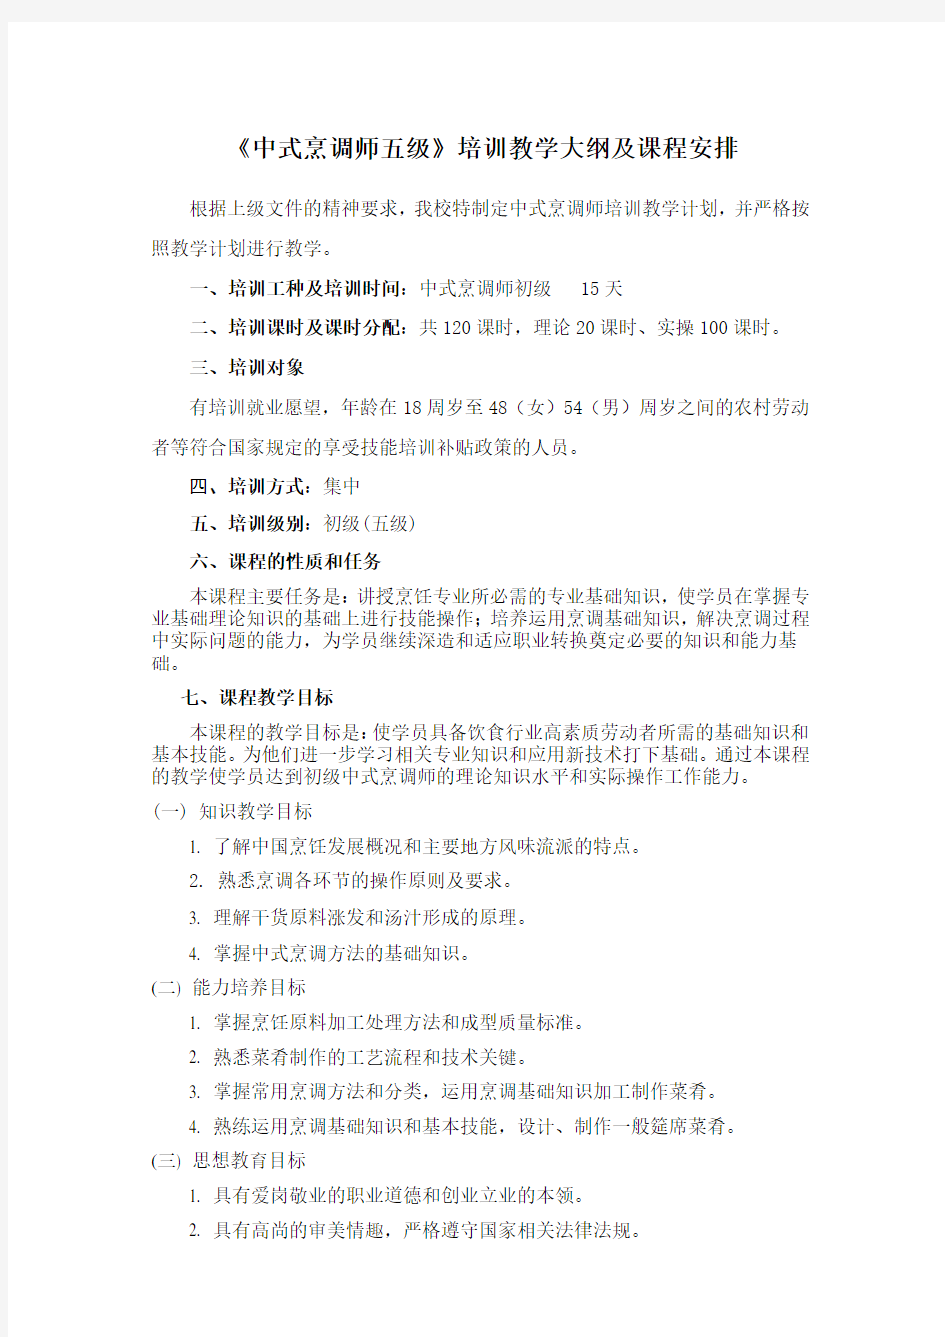 中式烹调教学计划---2015